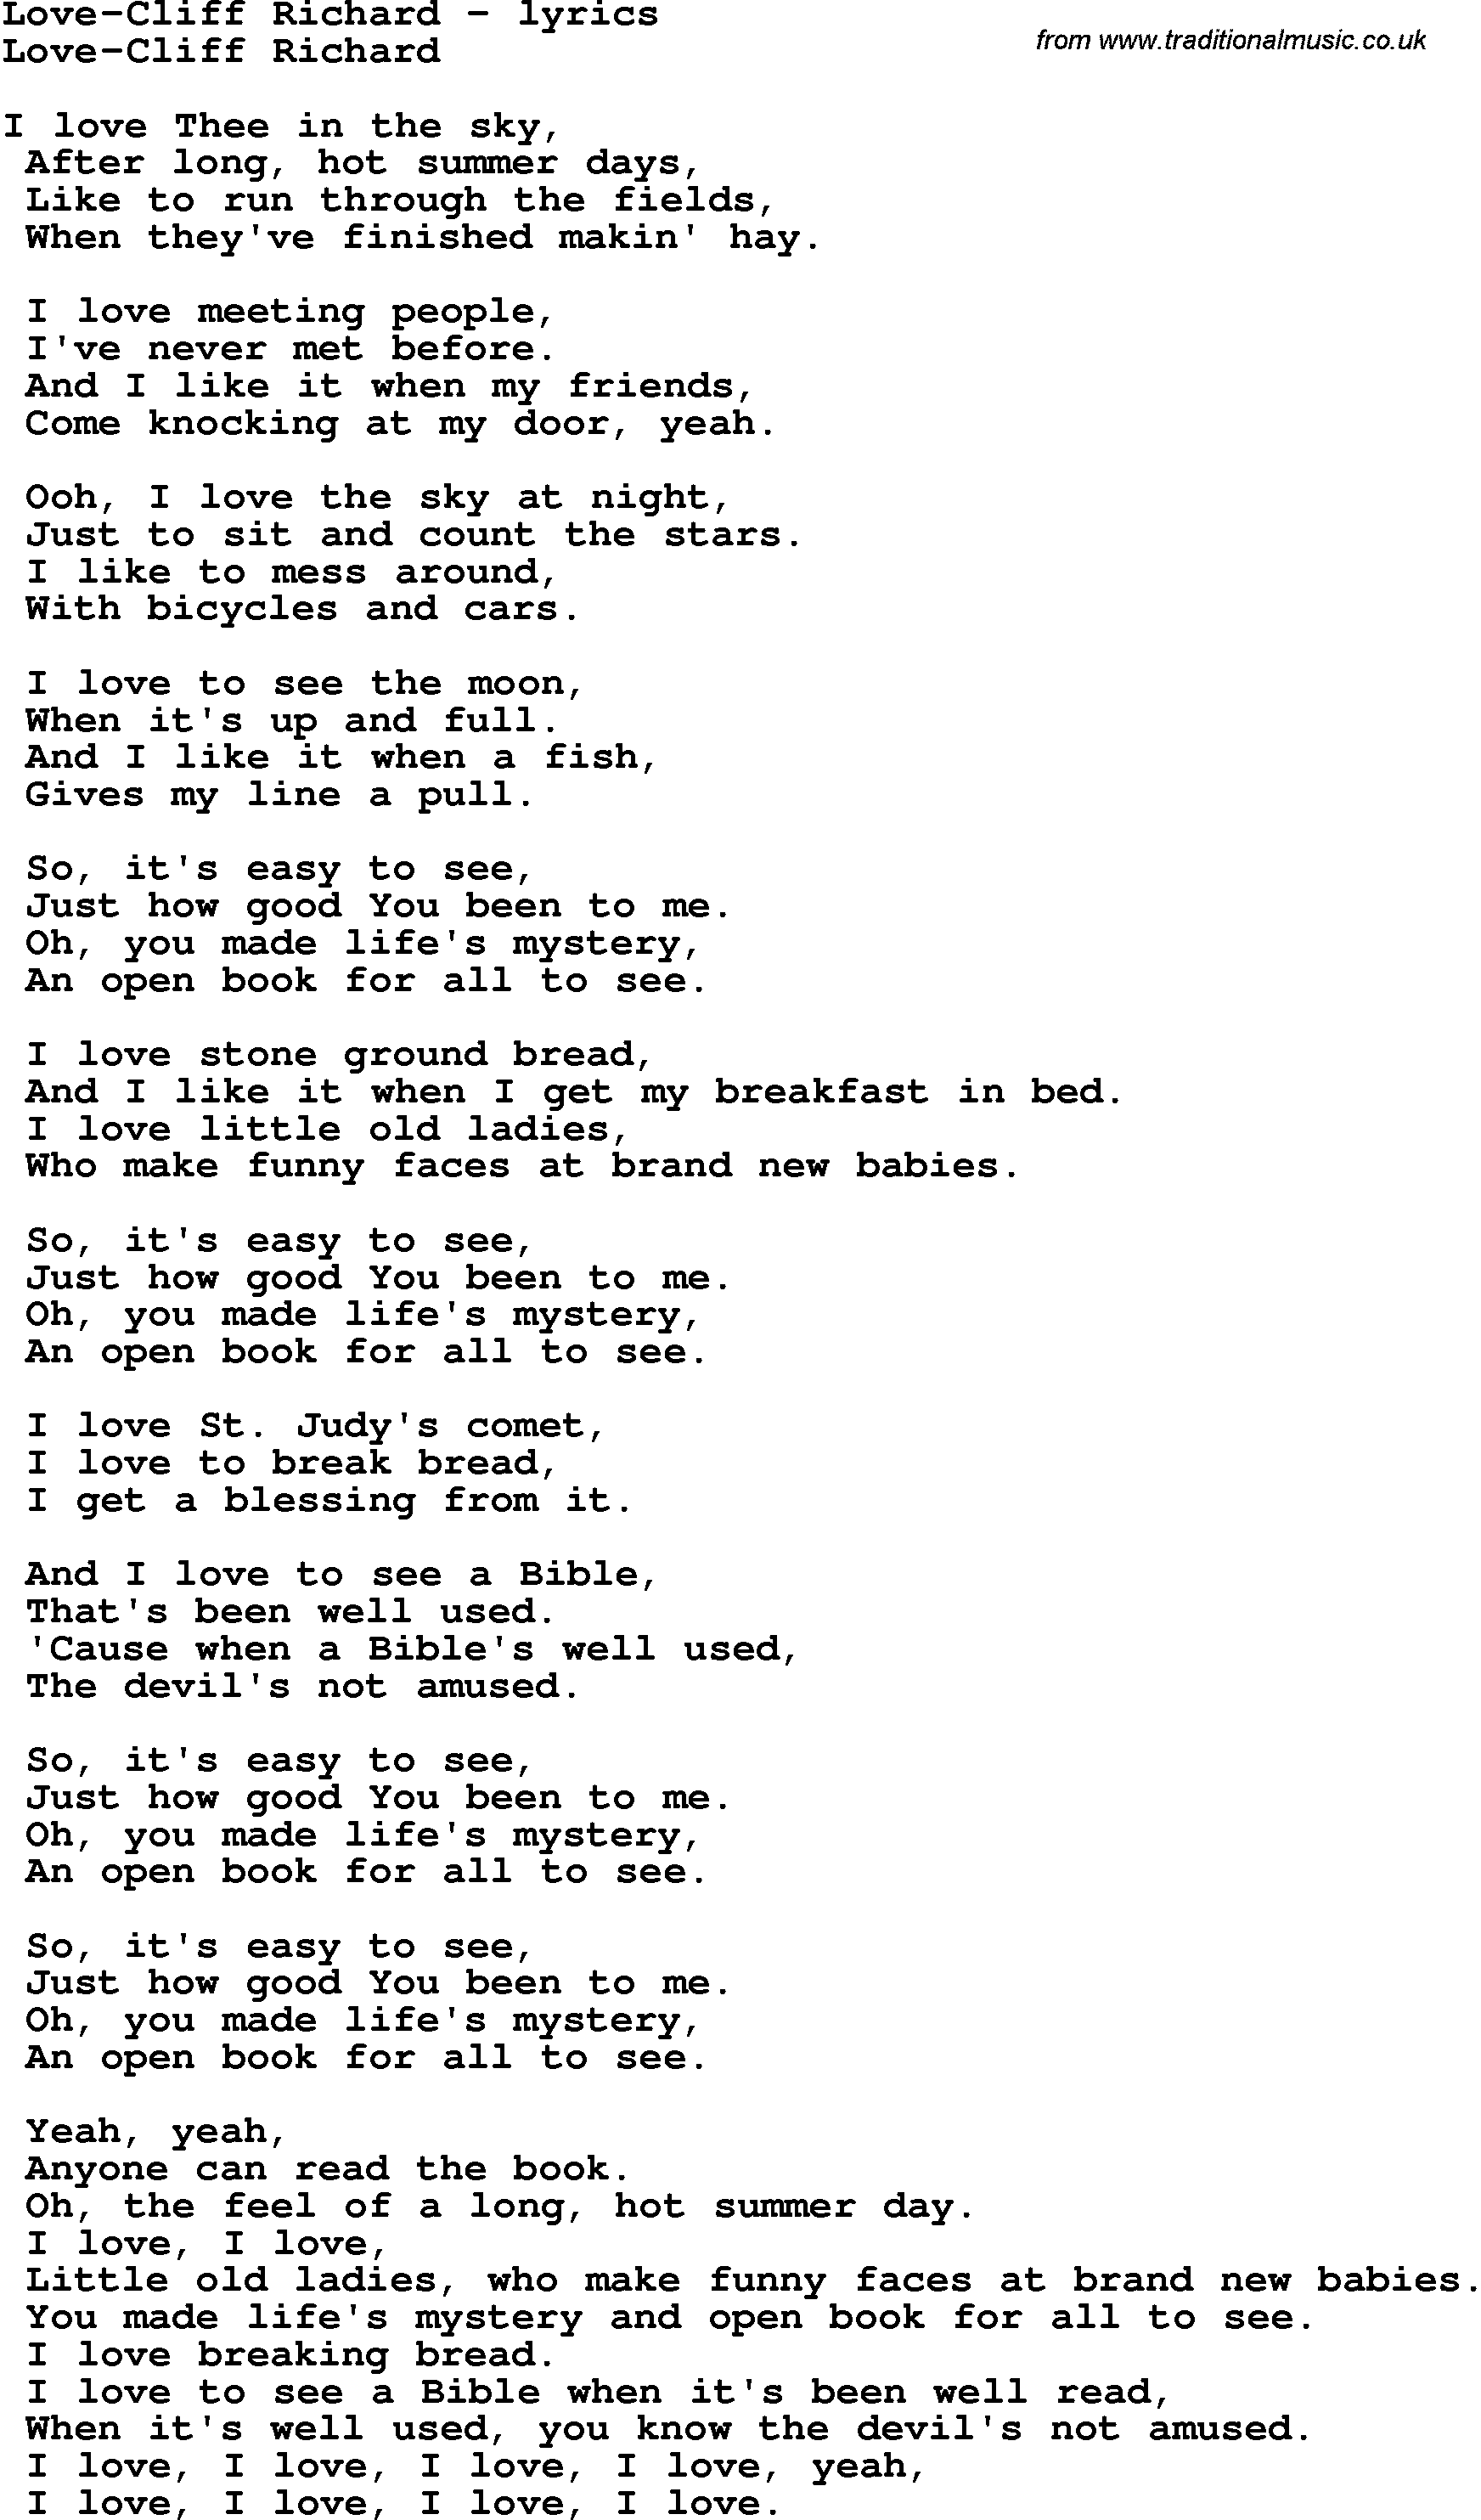 Love Song Lyrics for: Love-Cliff Richard